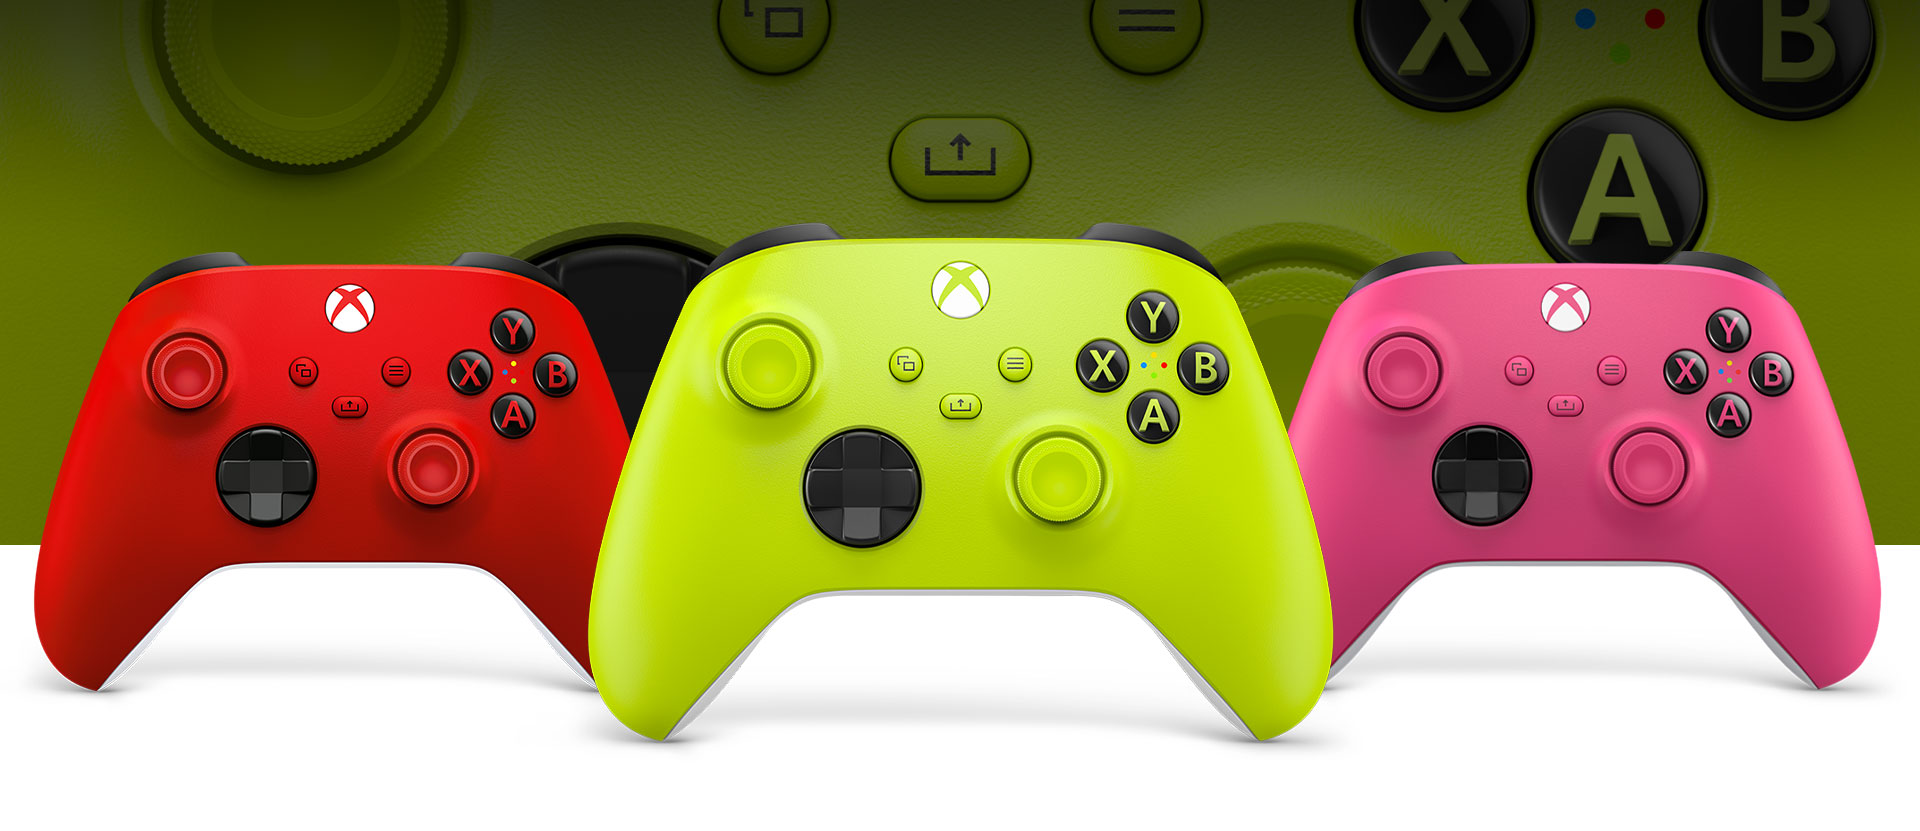 Control inalámbrico Xbox en voltios eléctricos delante de un control de color rojo radiante a la izquierda y un control de color rosa a la derecha